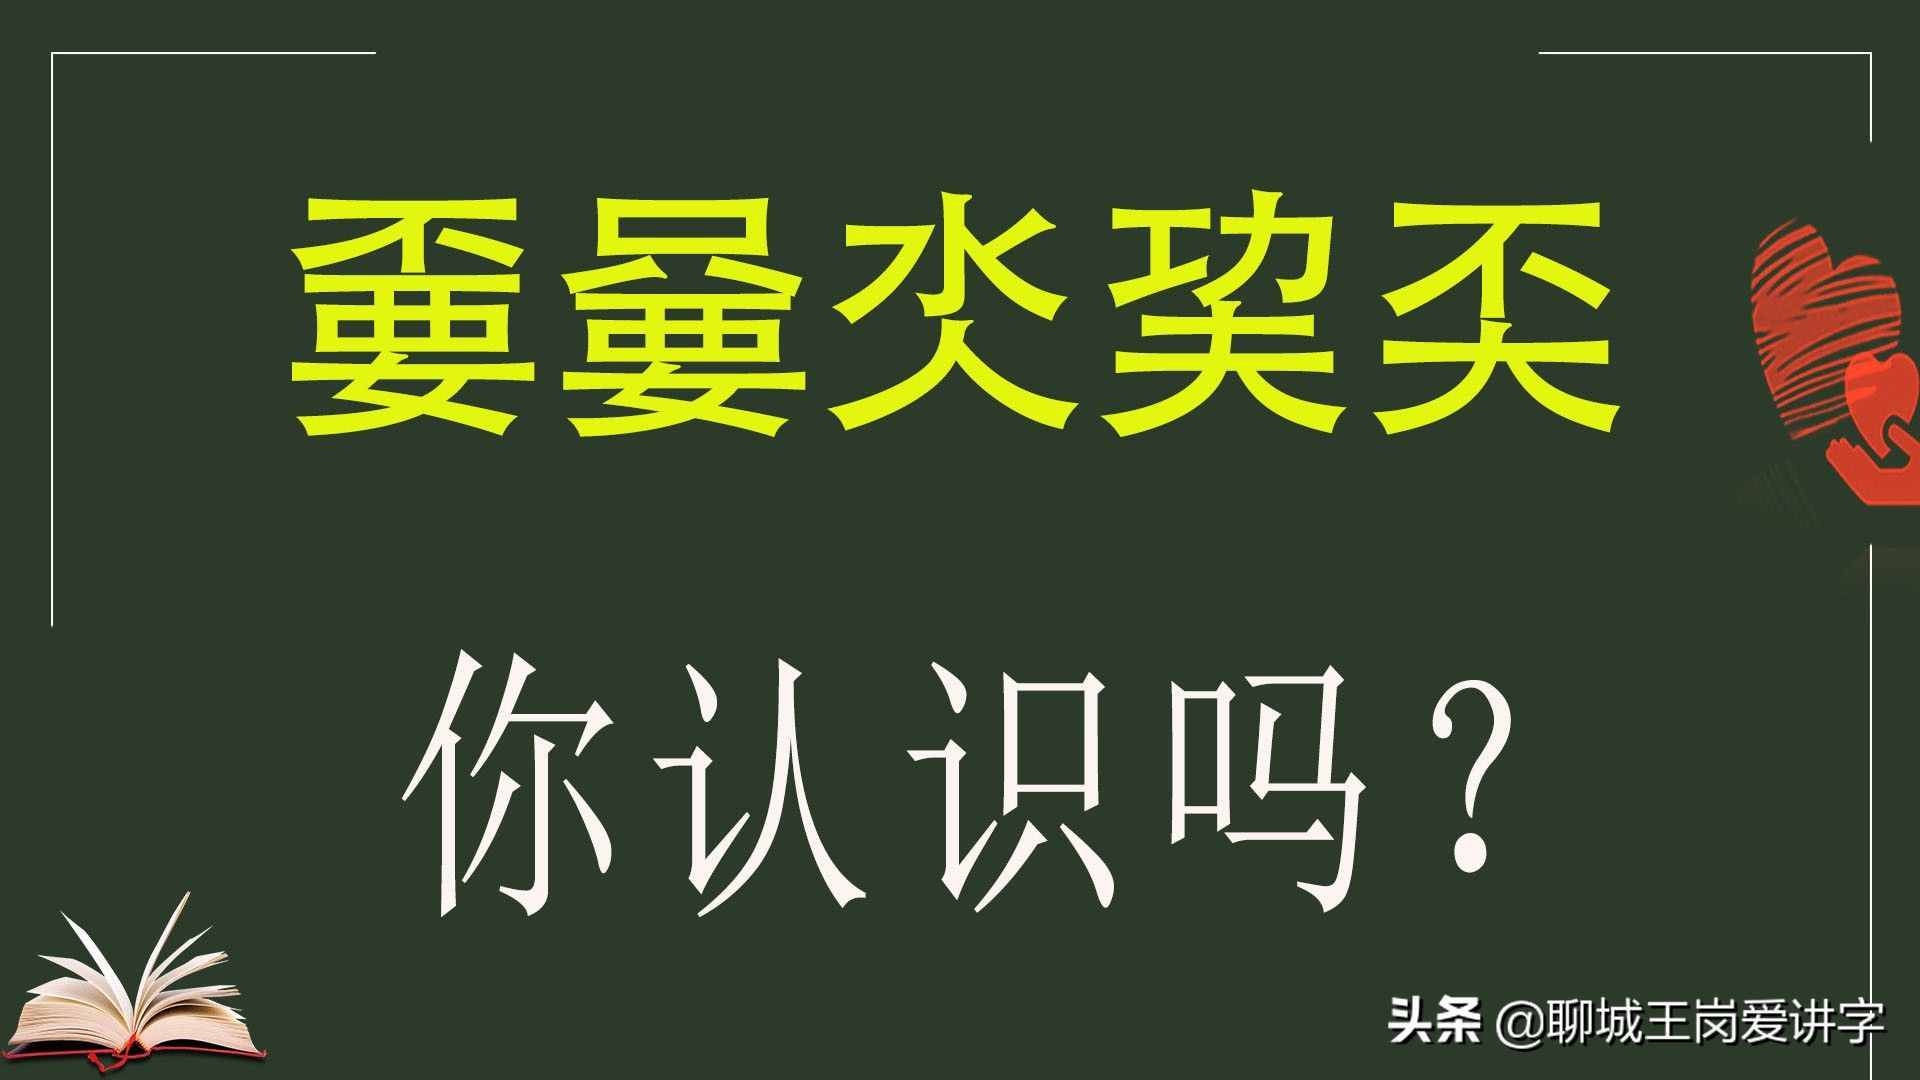 人工造字“嘦嫑氼巭奀”，你了解吗？这些汉字你接受吗？